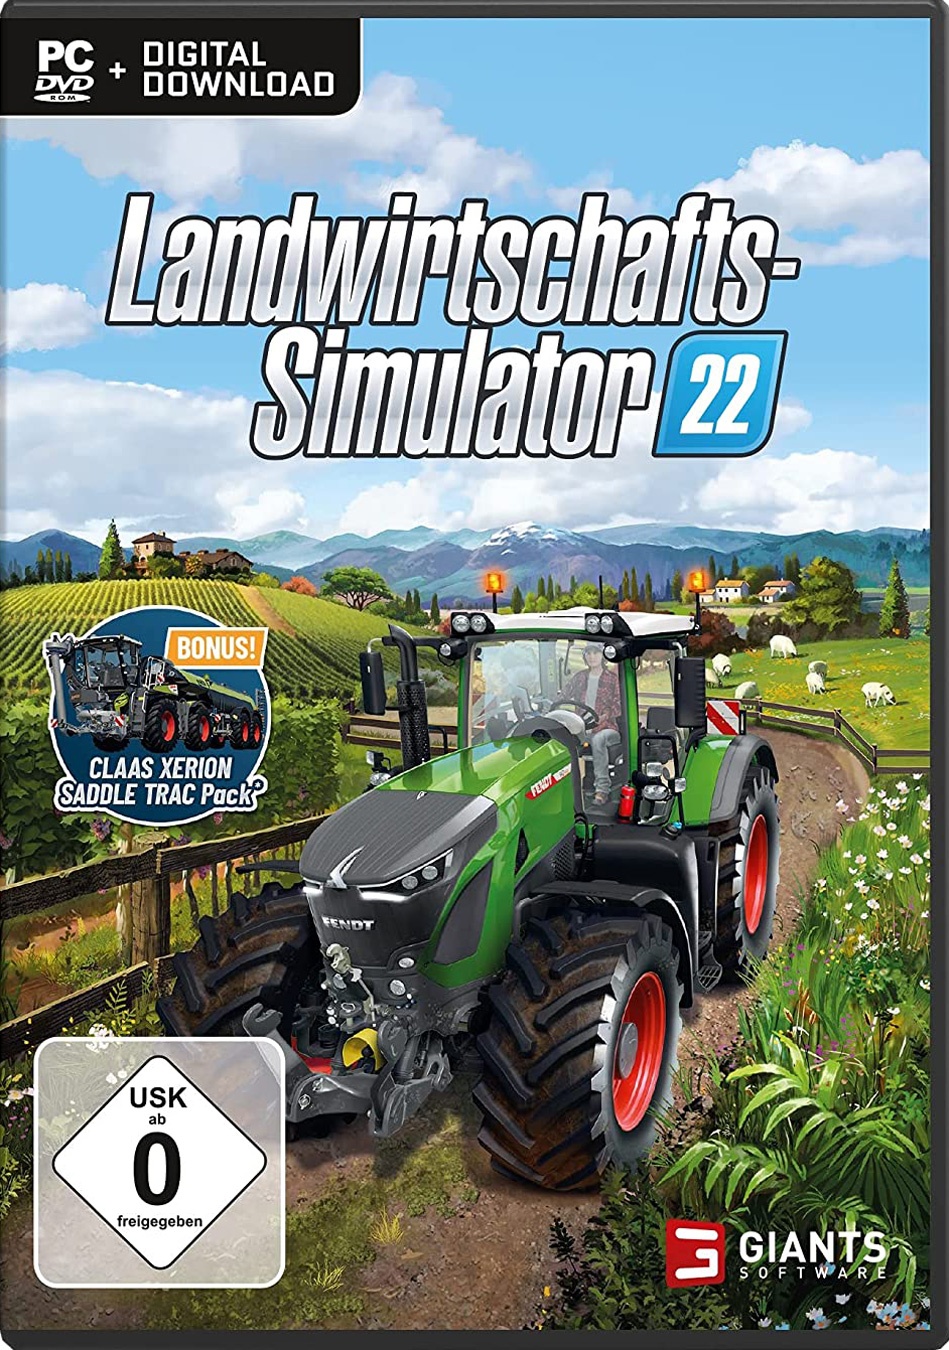 Landwirtschafts-Simulator 22 - Release, News, Systemanforderungen